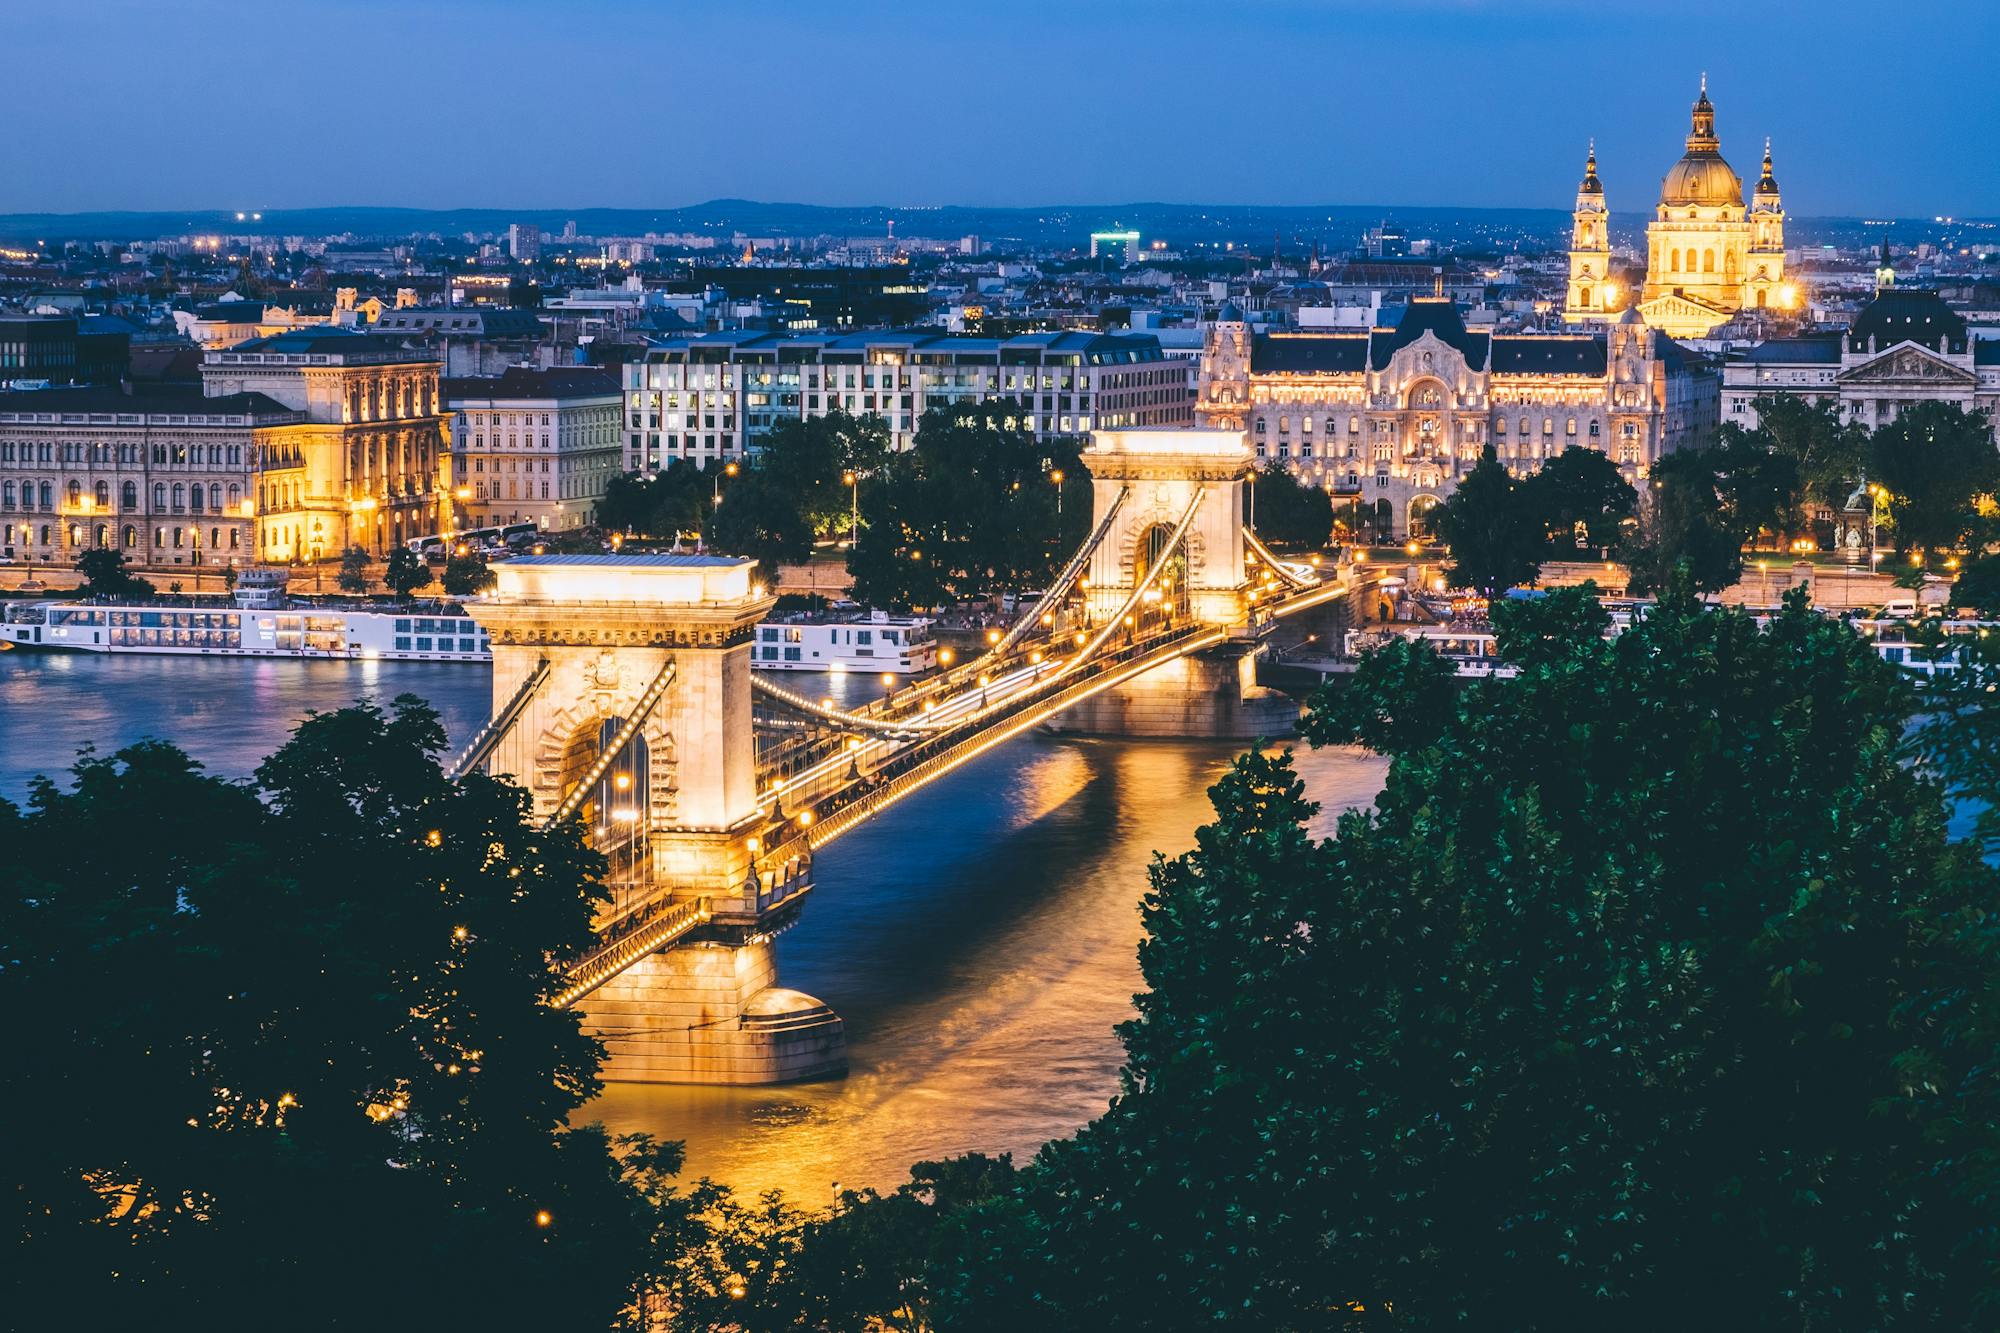 Widok z lotu ptaka na Budapeszt nocą. Światła mostu, kanału i pięknych starych budynków sprawiają, że miasto wydaje się magiczne.